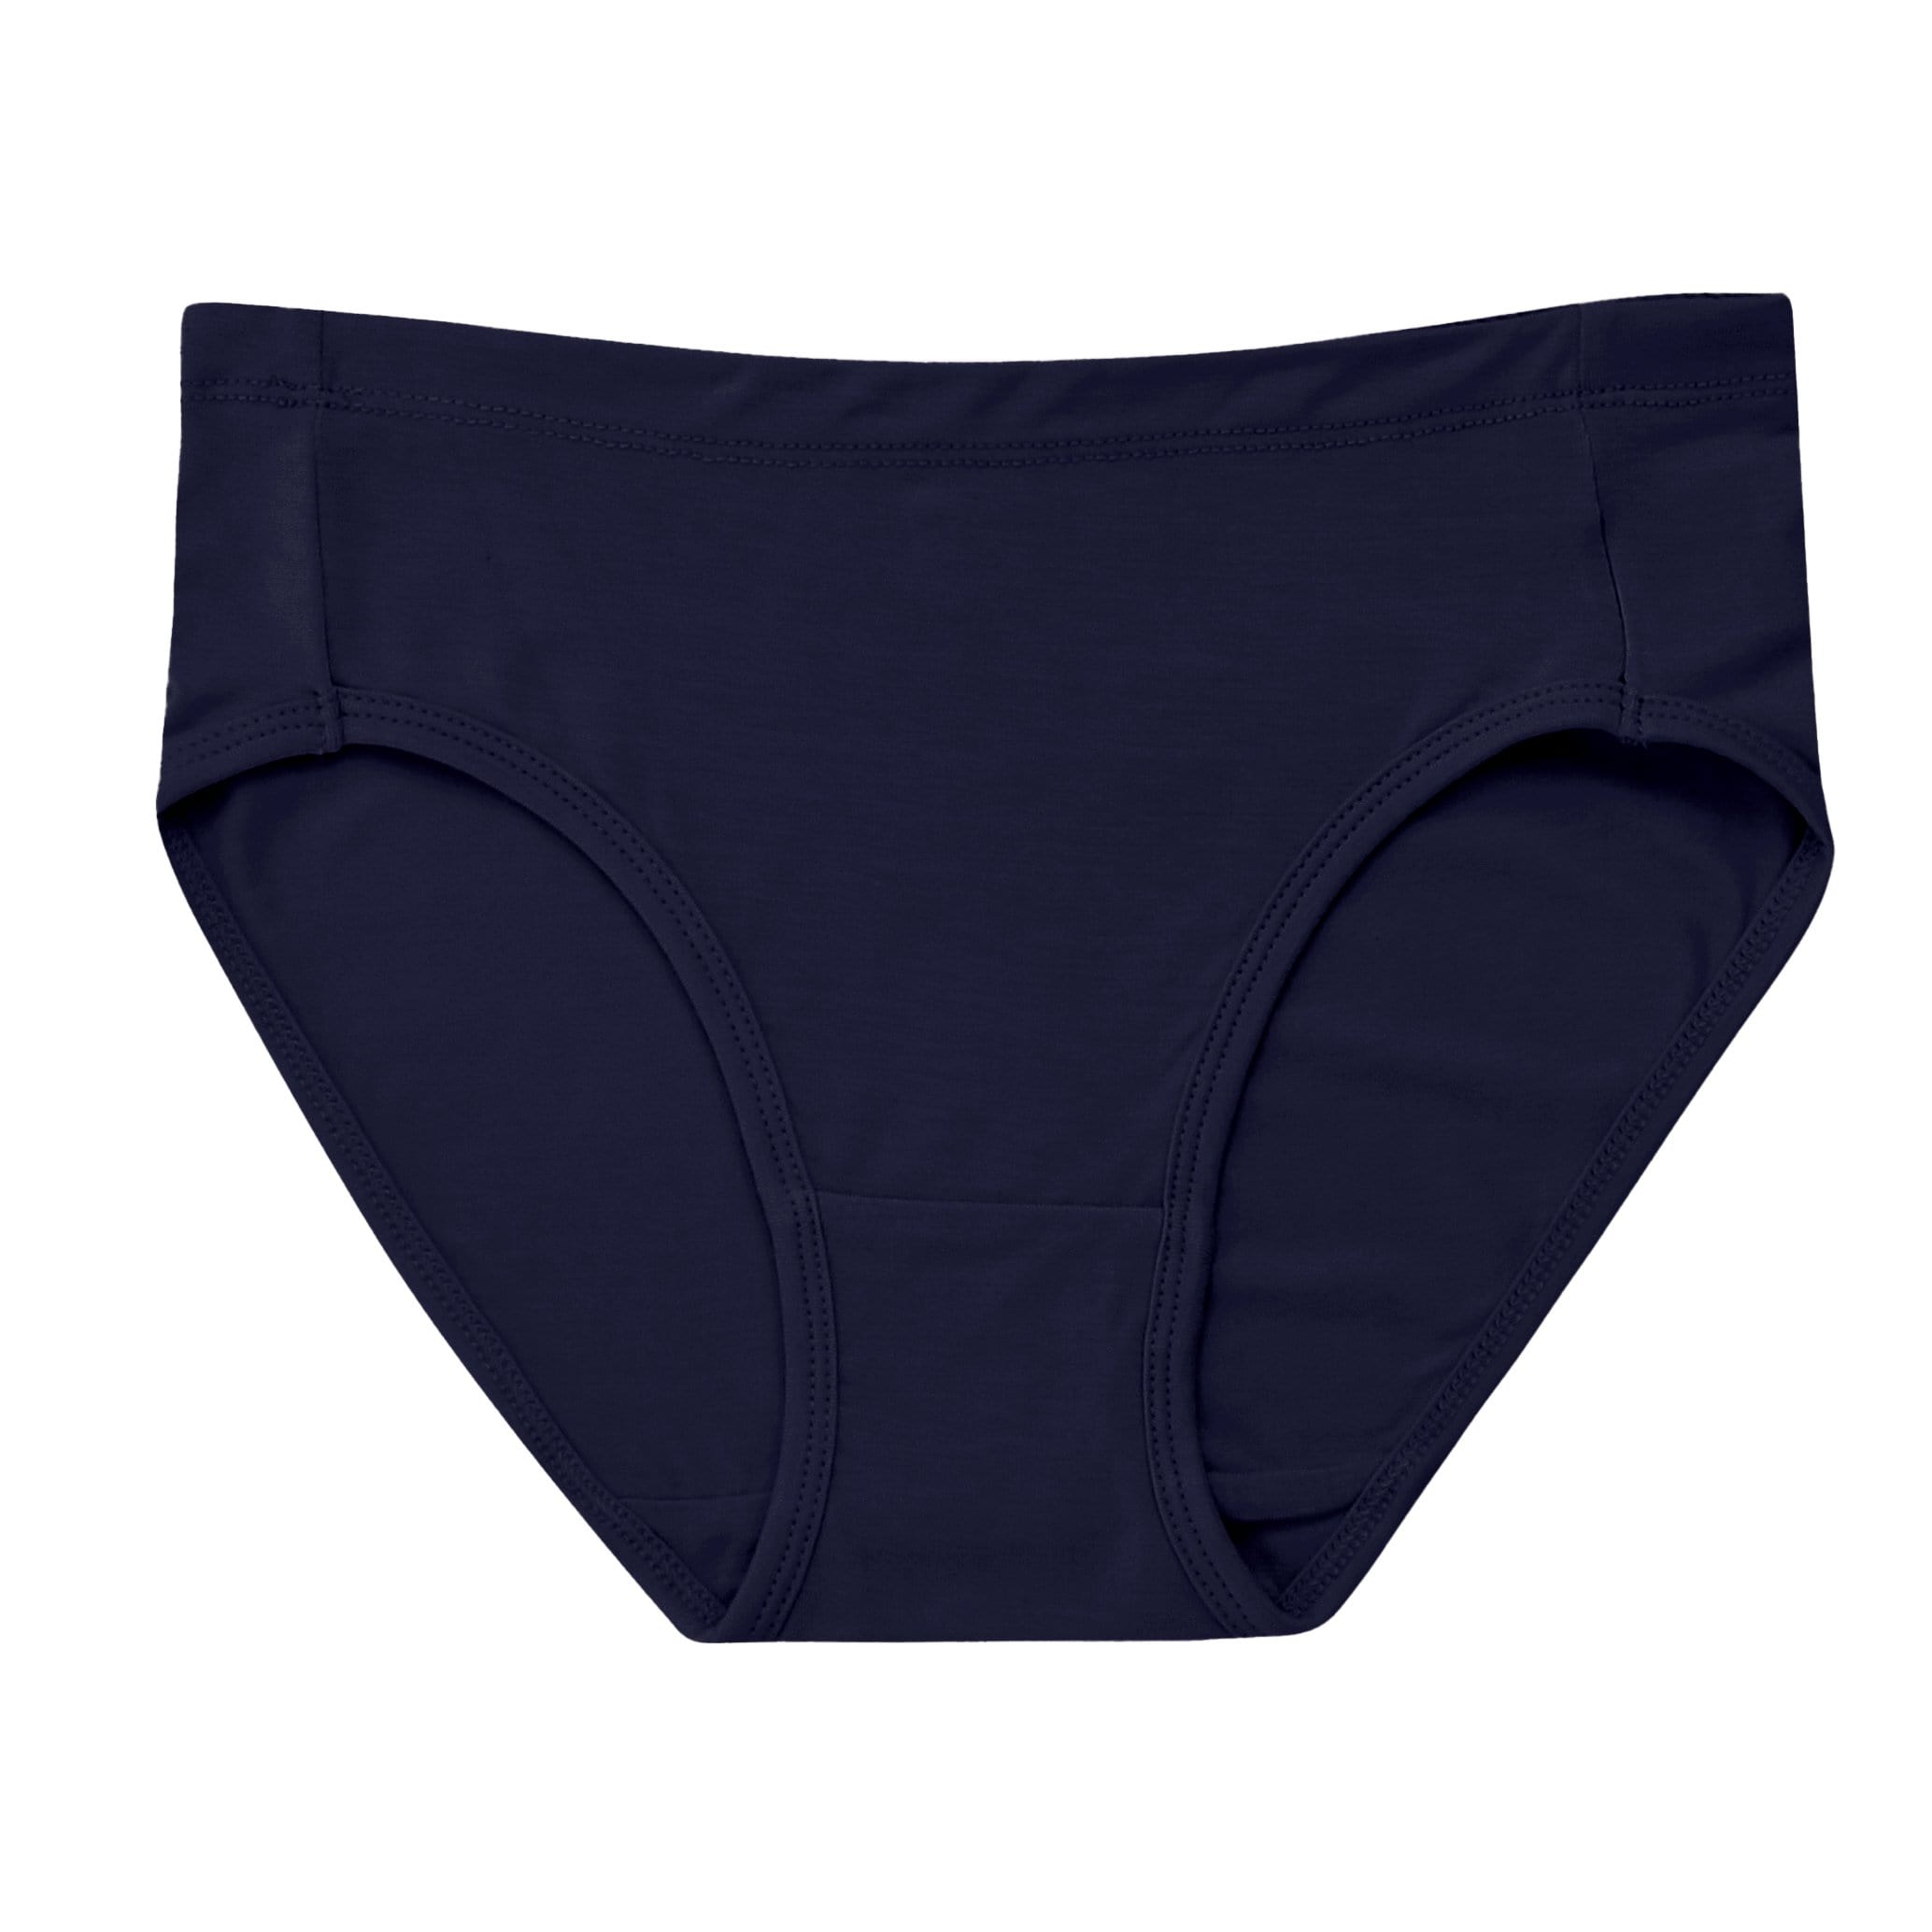 Women’s Underwear in Navy